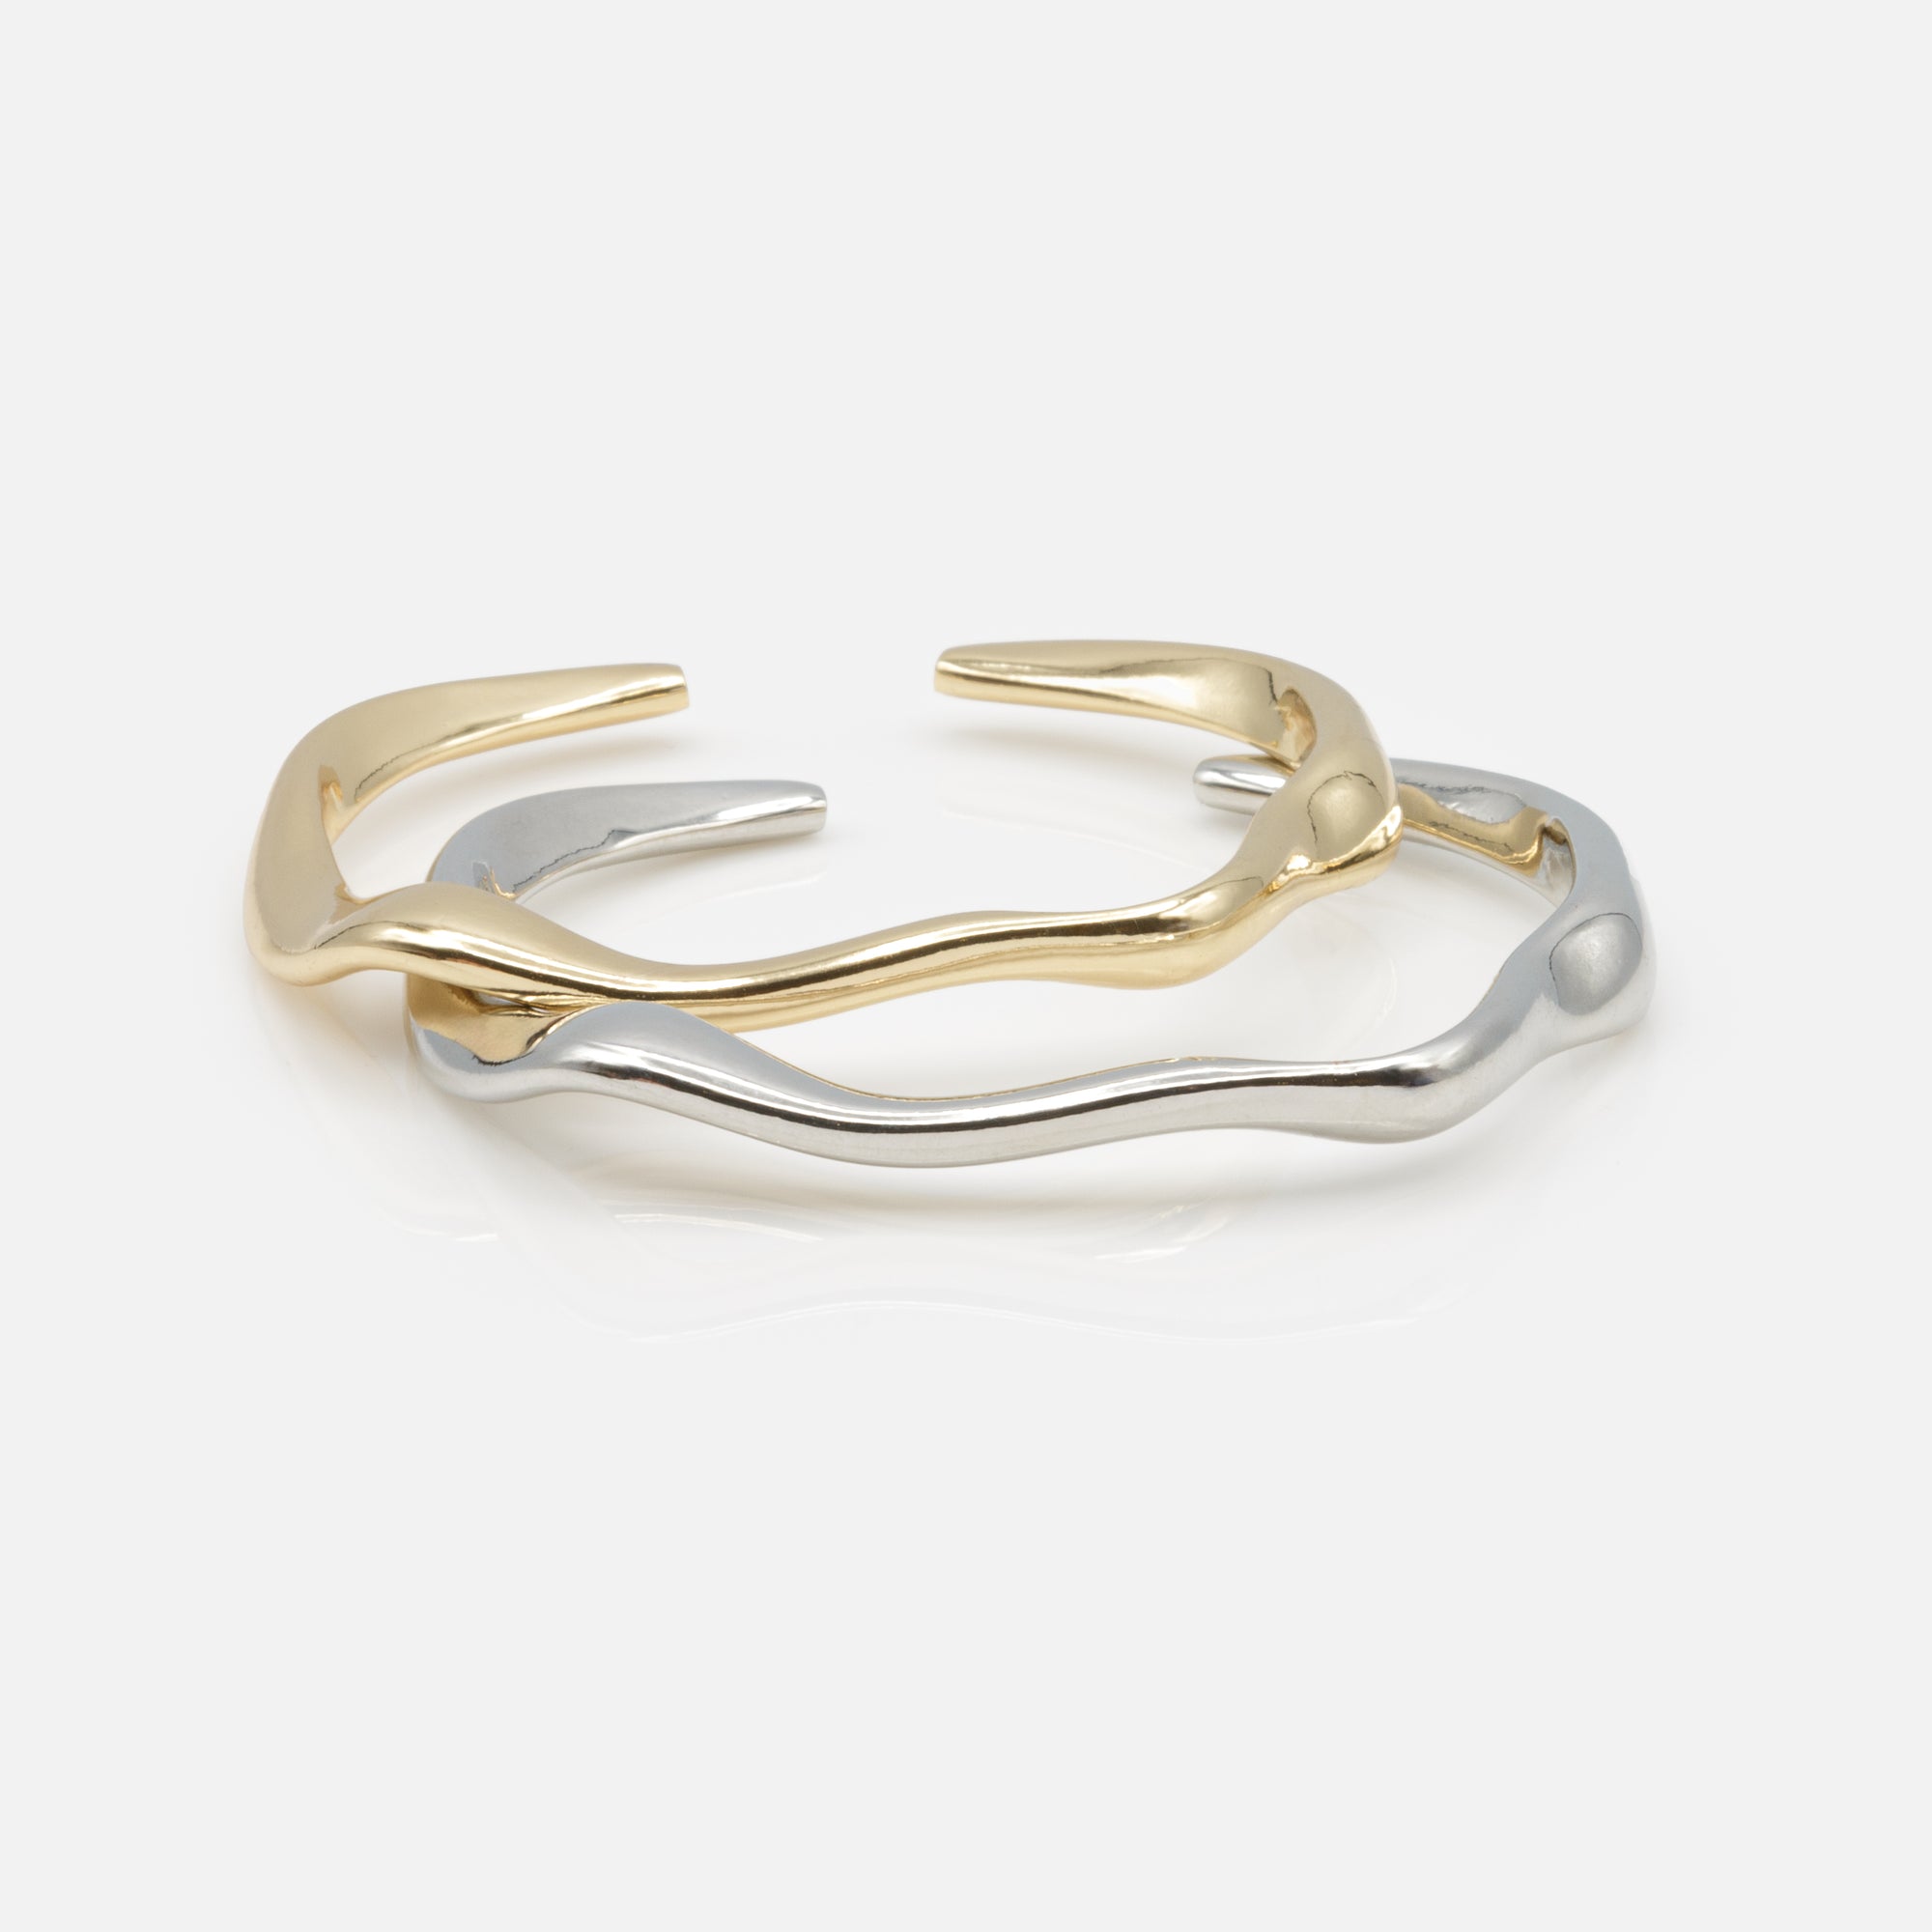 Duo de bracelets rigides doré et argenté effet vagues